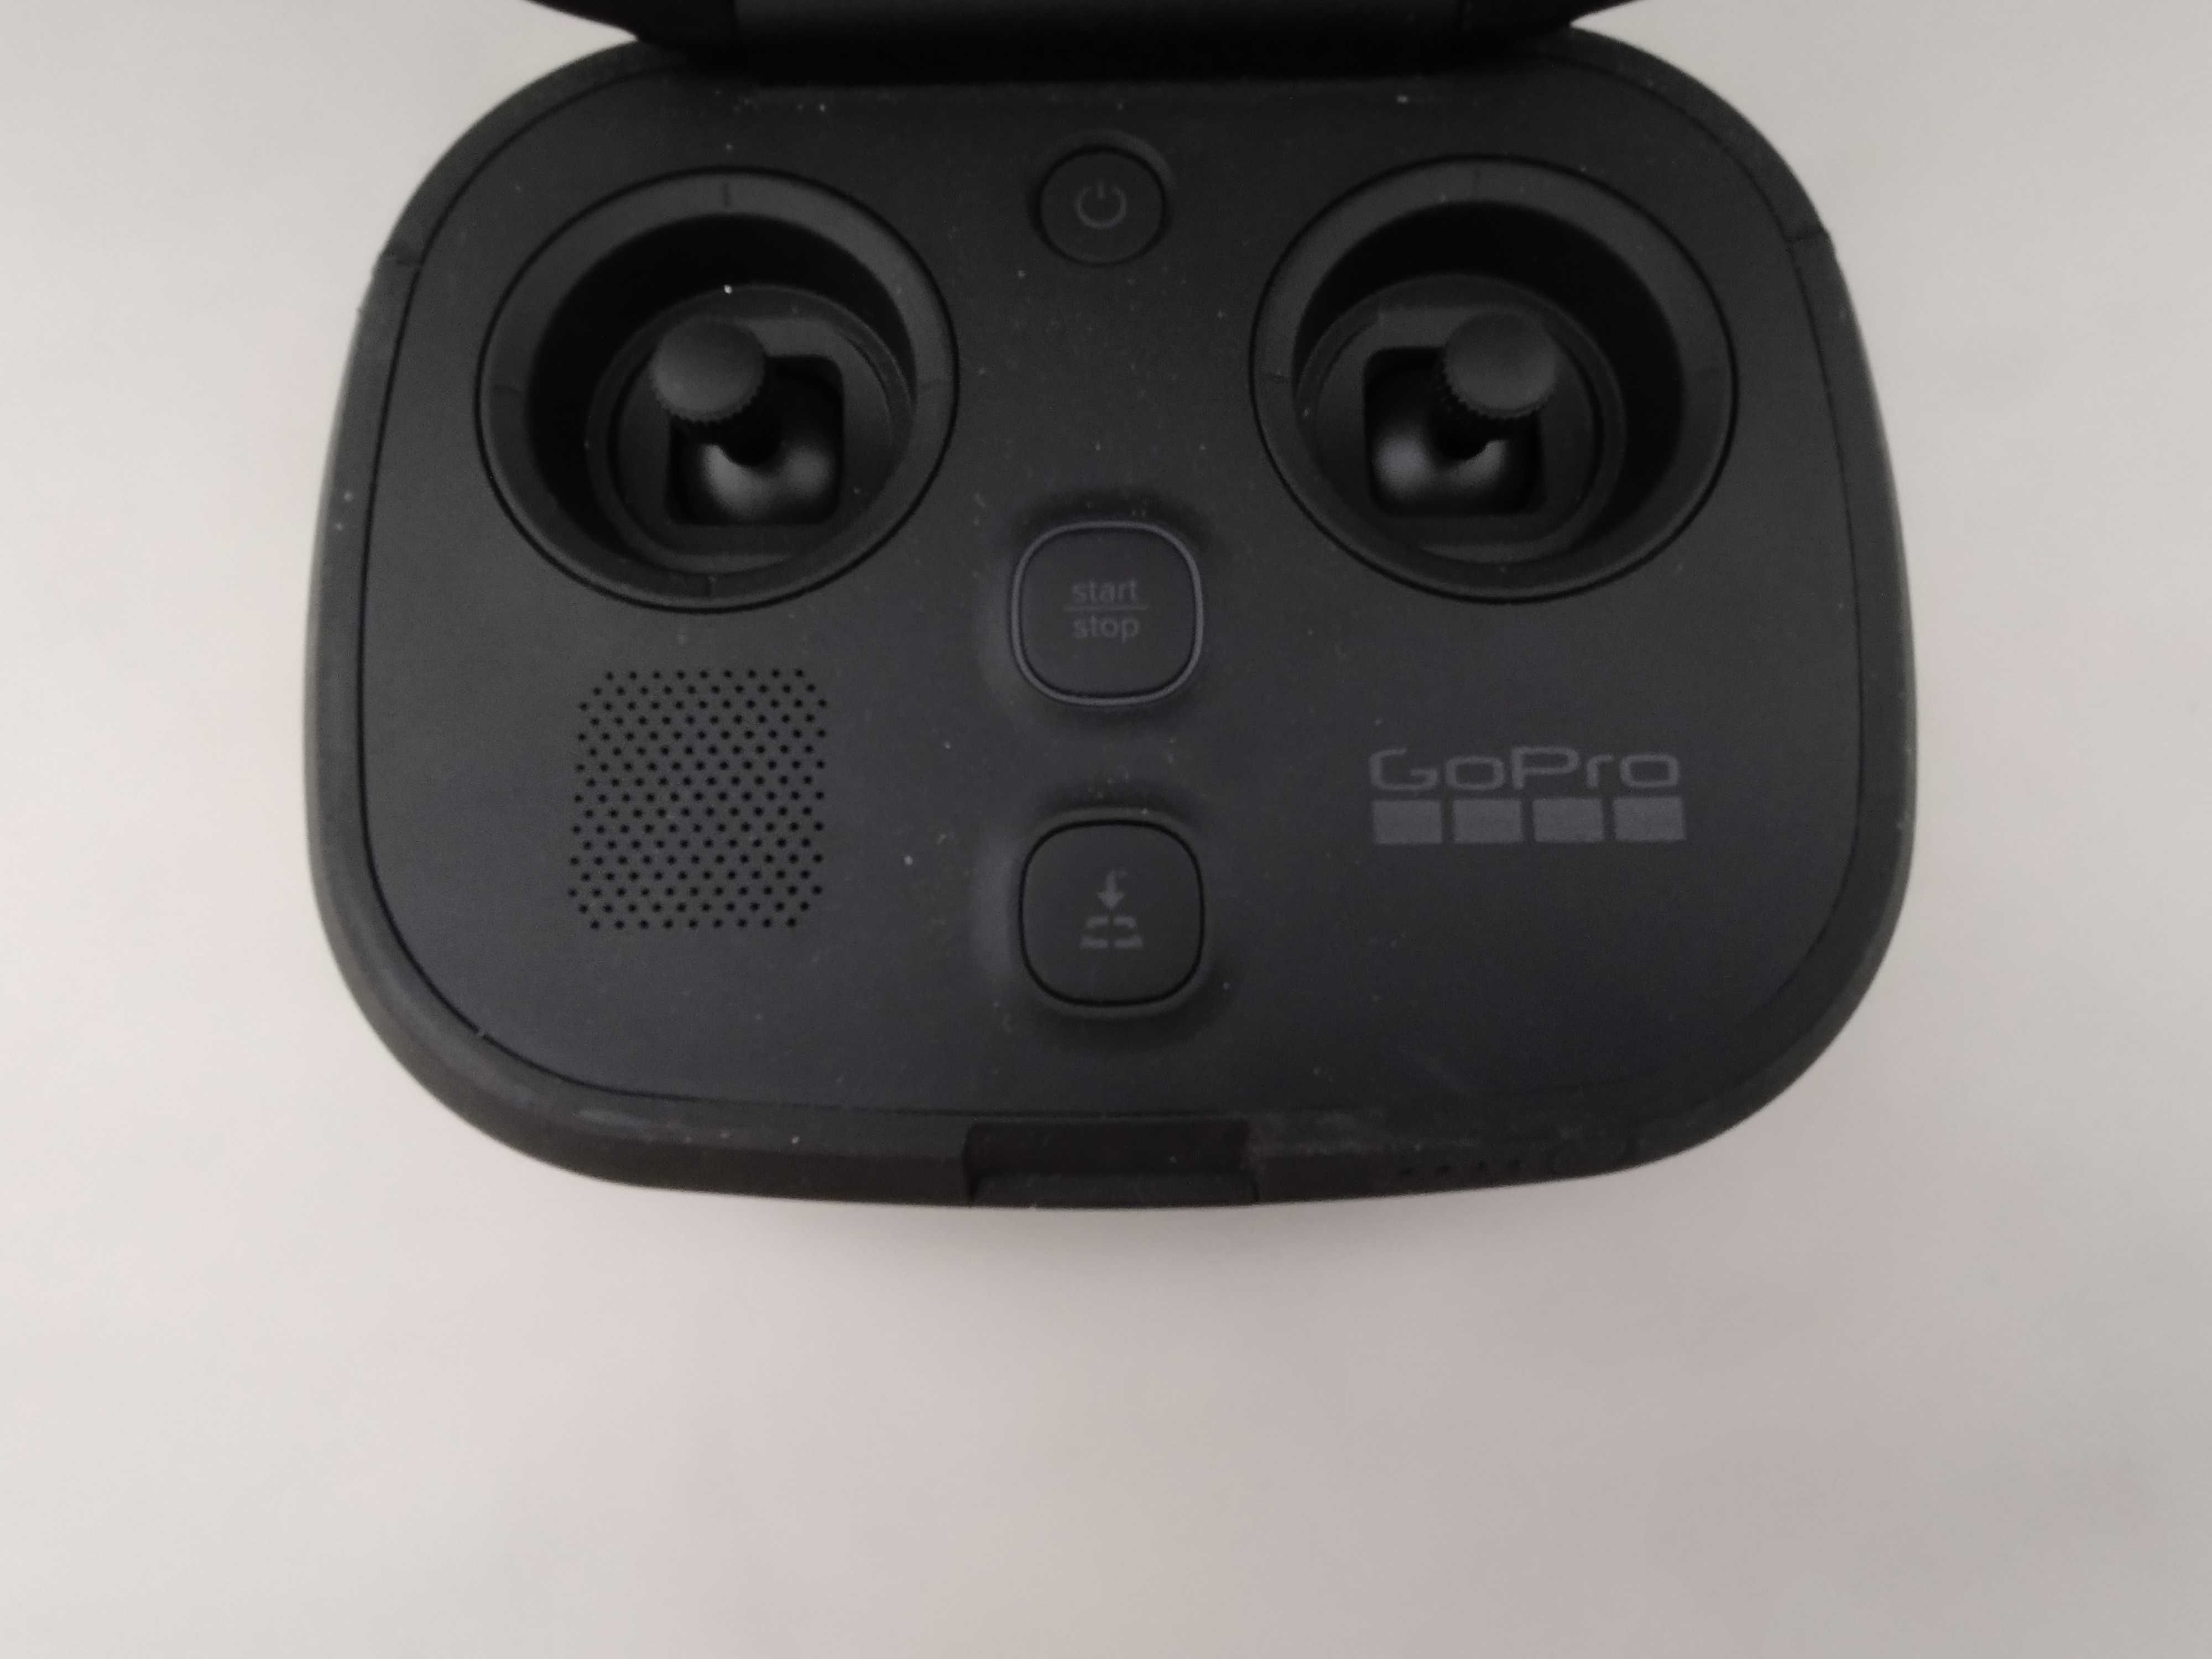 Telecomanda controller drona Karma GoPro